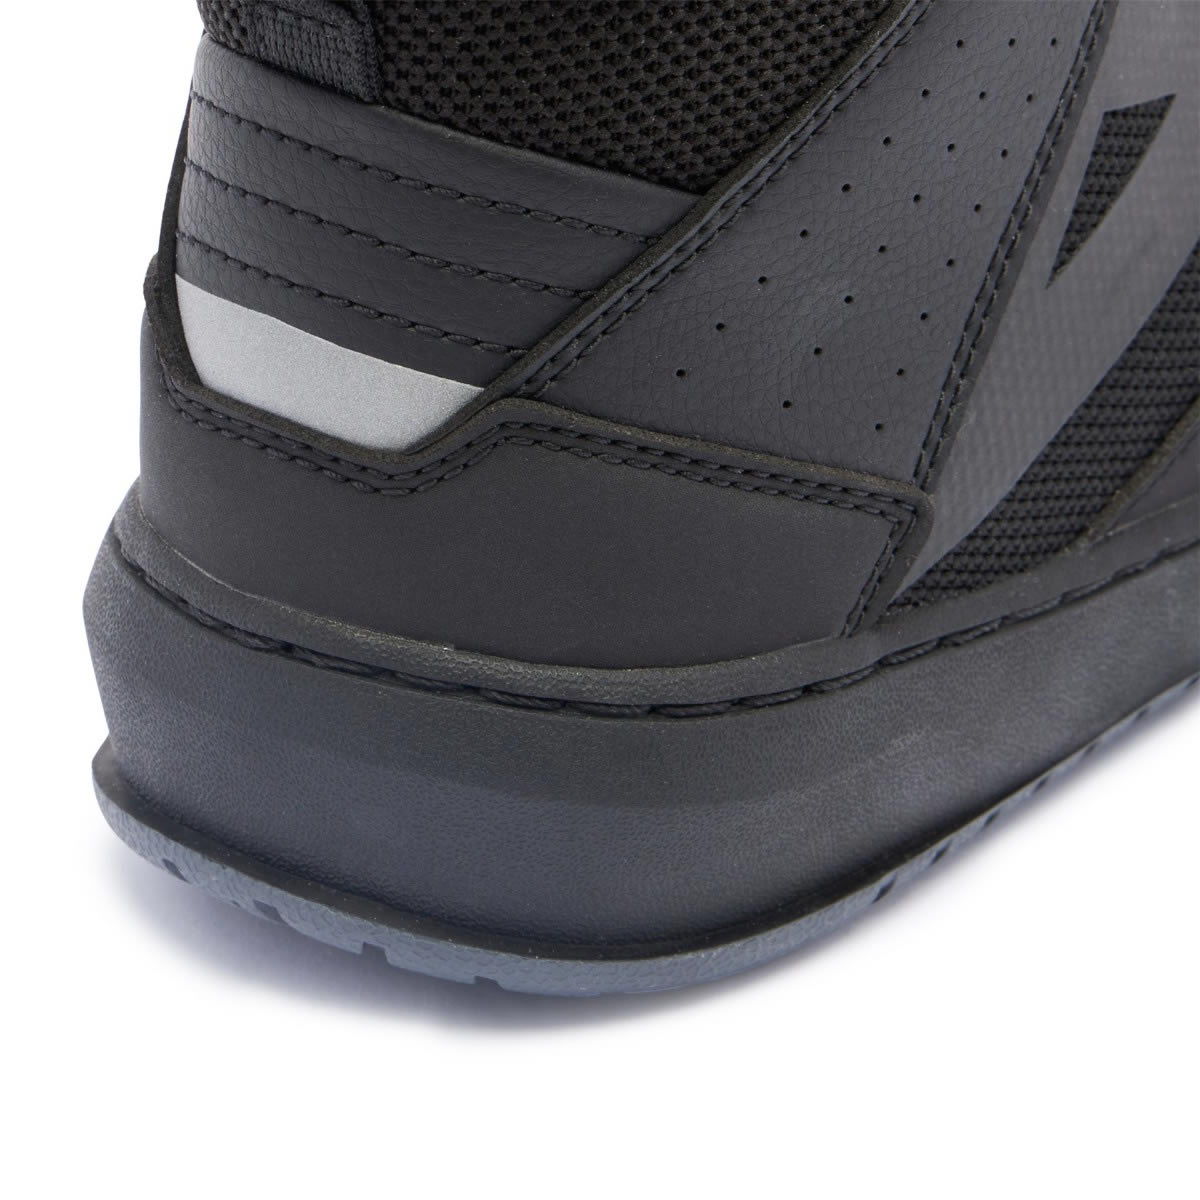 Dainese Suburb Air Schuhe, schwarz-schwarz